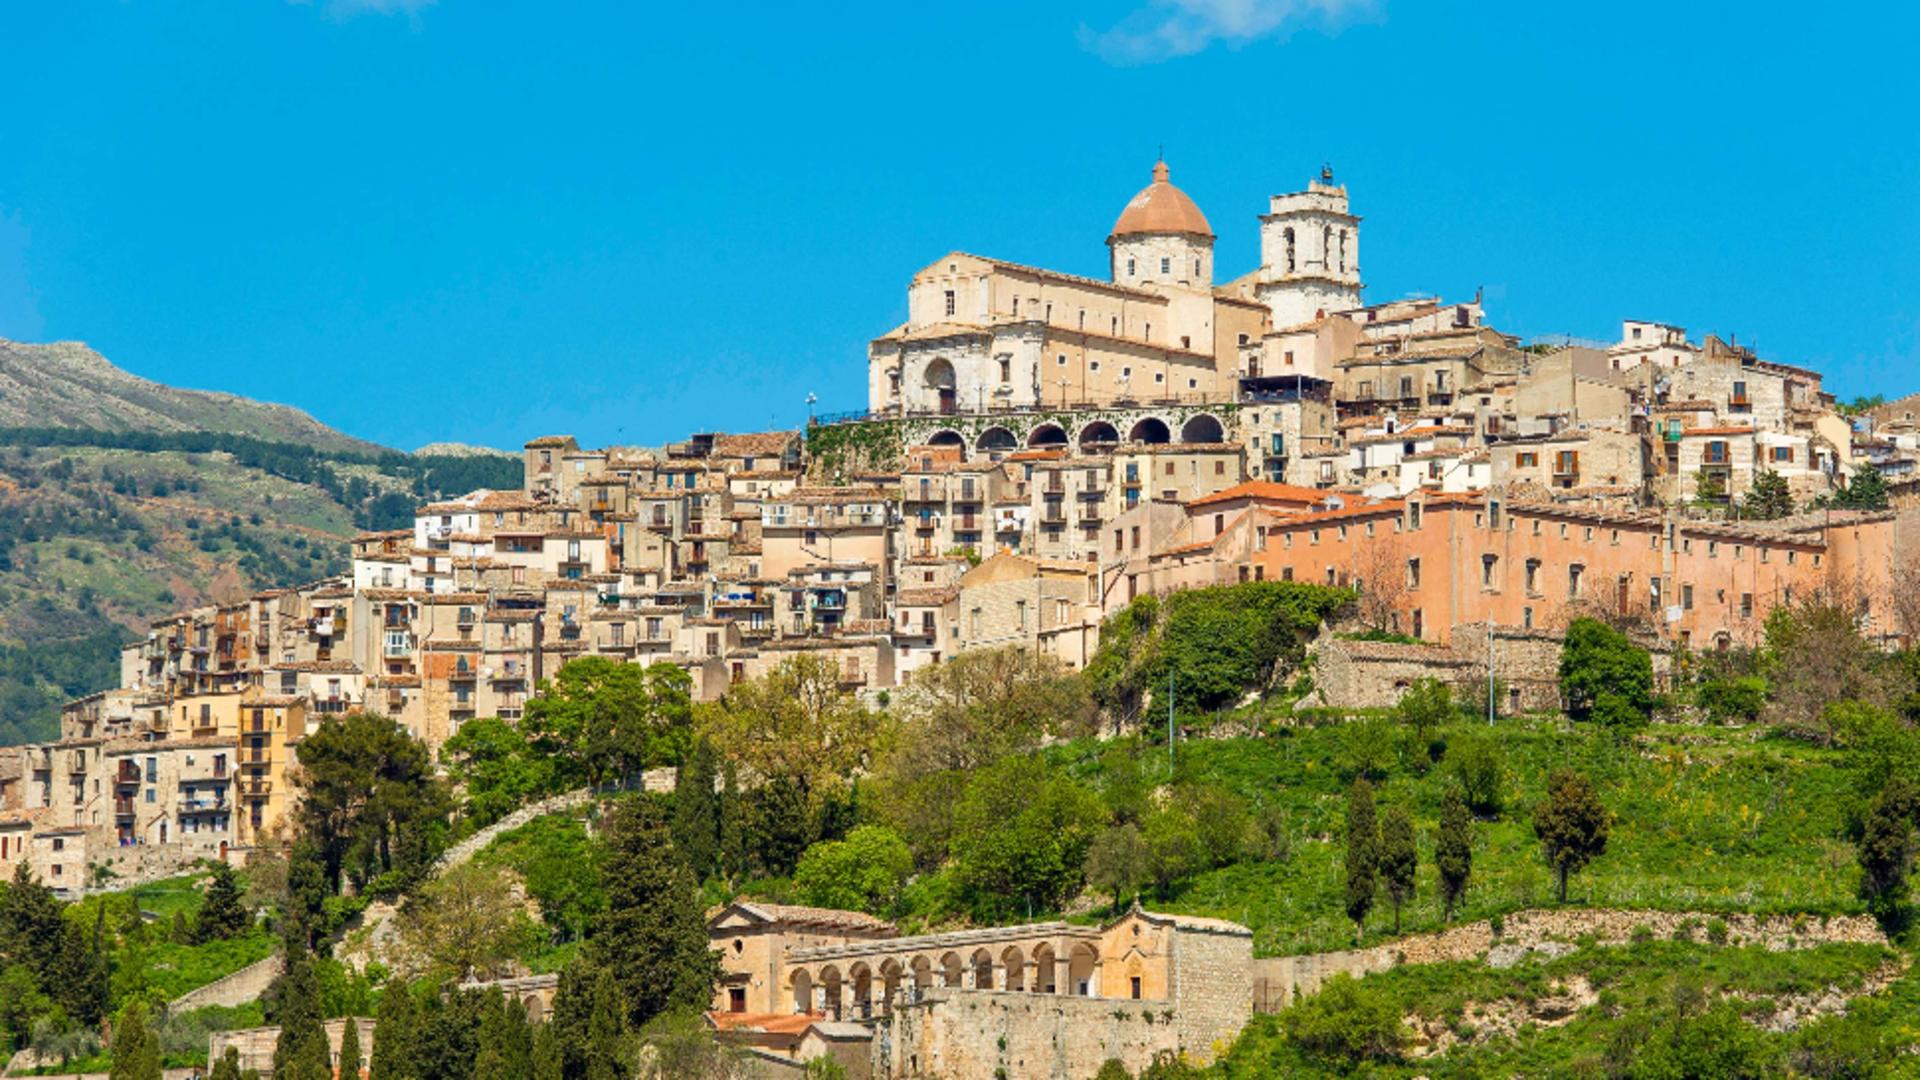 Localitatea din Italia care DĂ BANI oricui vrea să se mute acolo. 5.000 de euro pe loc și oportunitatea unui nou început